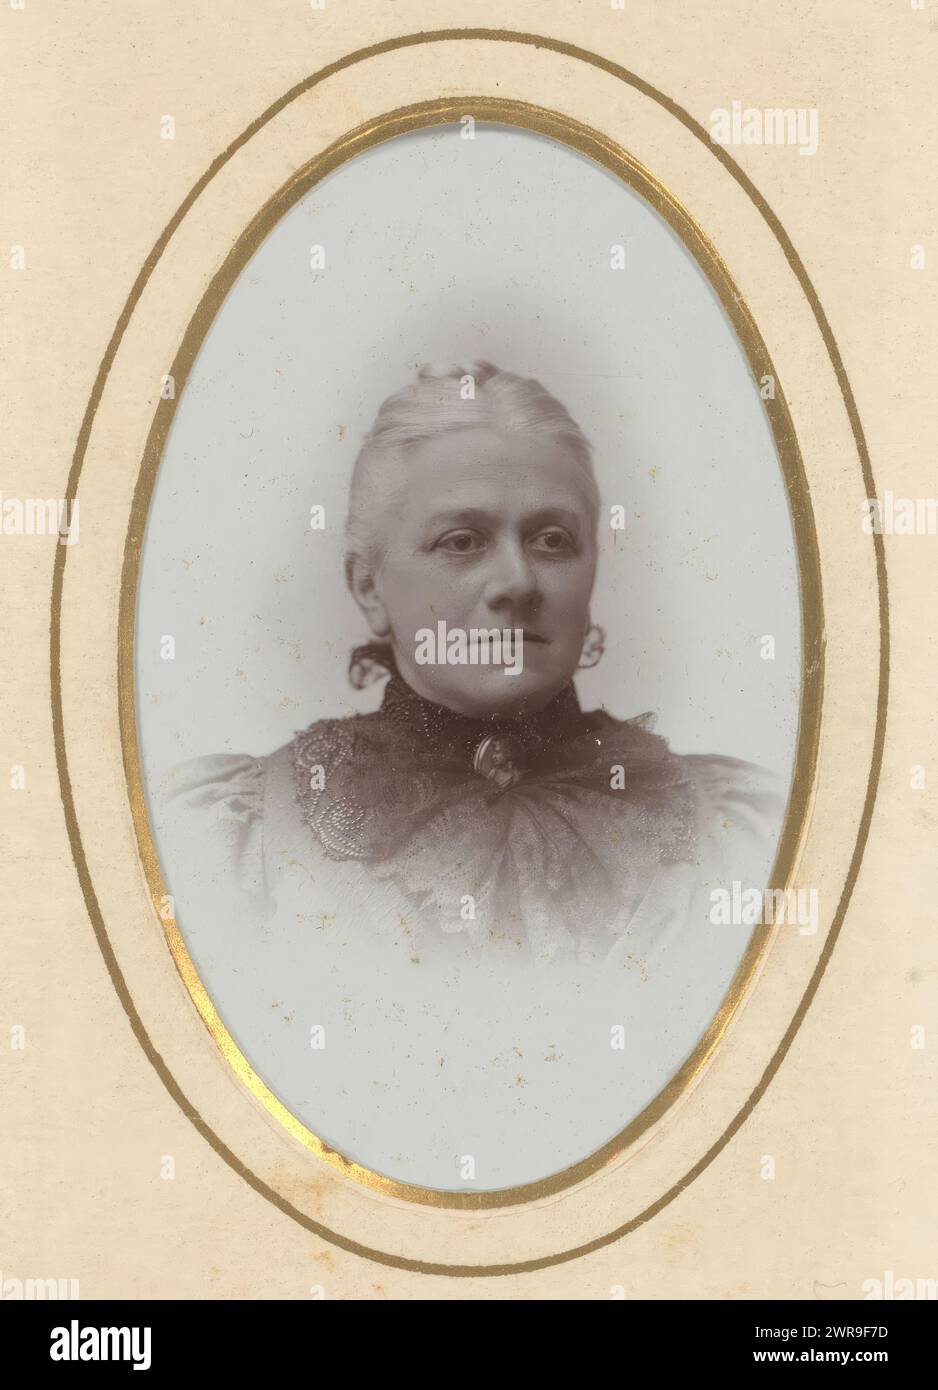 Porträt einer Frau, dieses Foto ist Teil eines Albums., Hendricus Jacobus de Koe, Leeuwarden, 1895 - 1899, Karton, Höhe 87 mm x Breite 53 mm, Foto Stockfoto